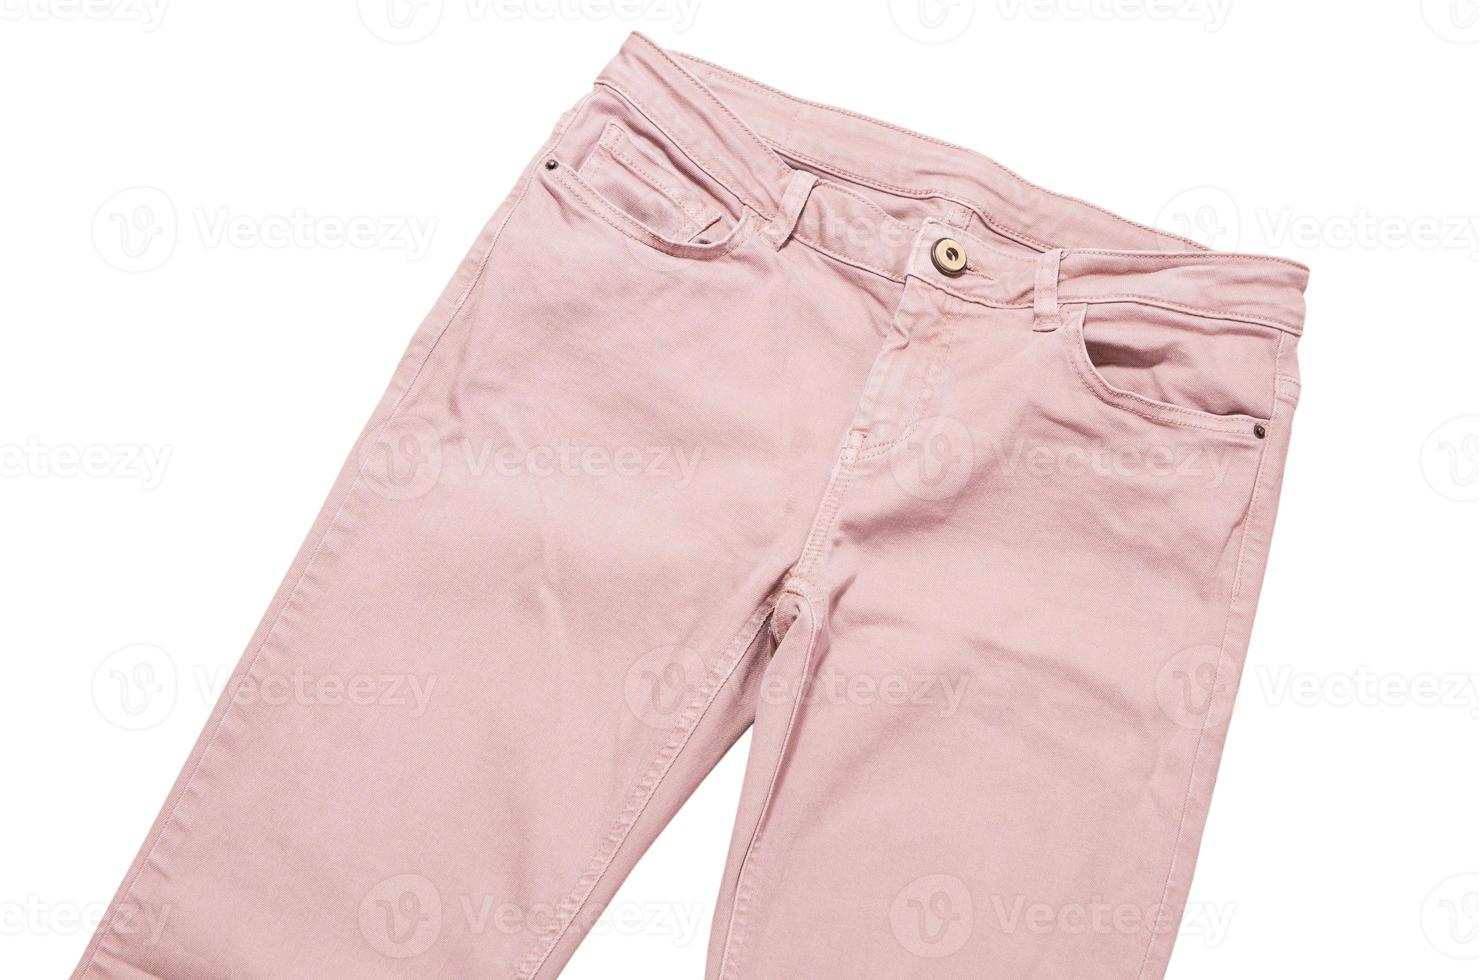 Pantalones femeninos, pantalones de mezclilla rosa claro vista superior aislada sobre fondo blanco, pantalones delgados doblados foto